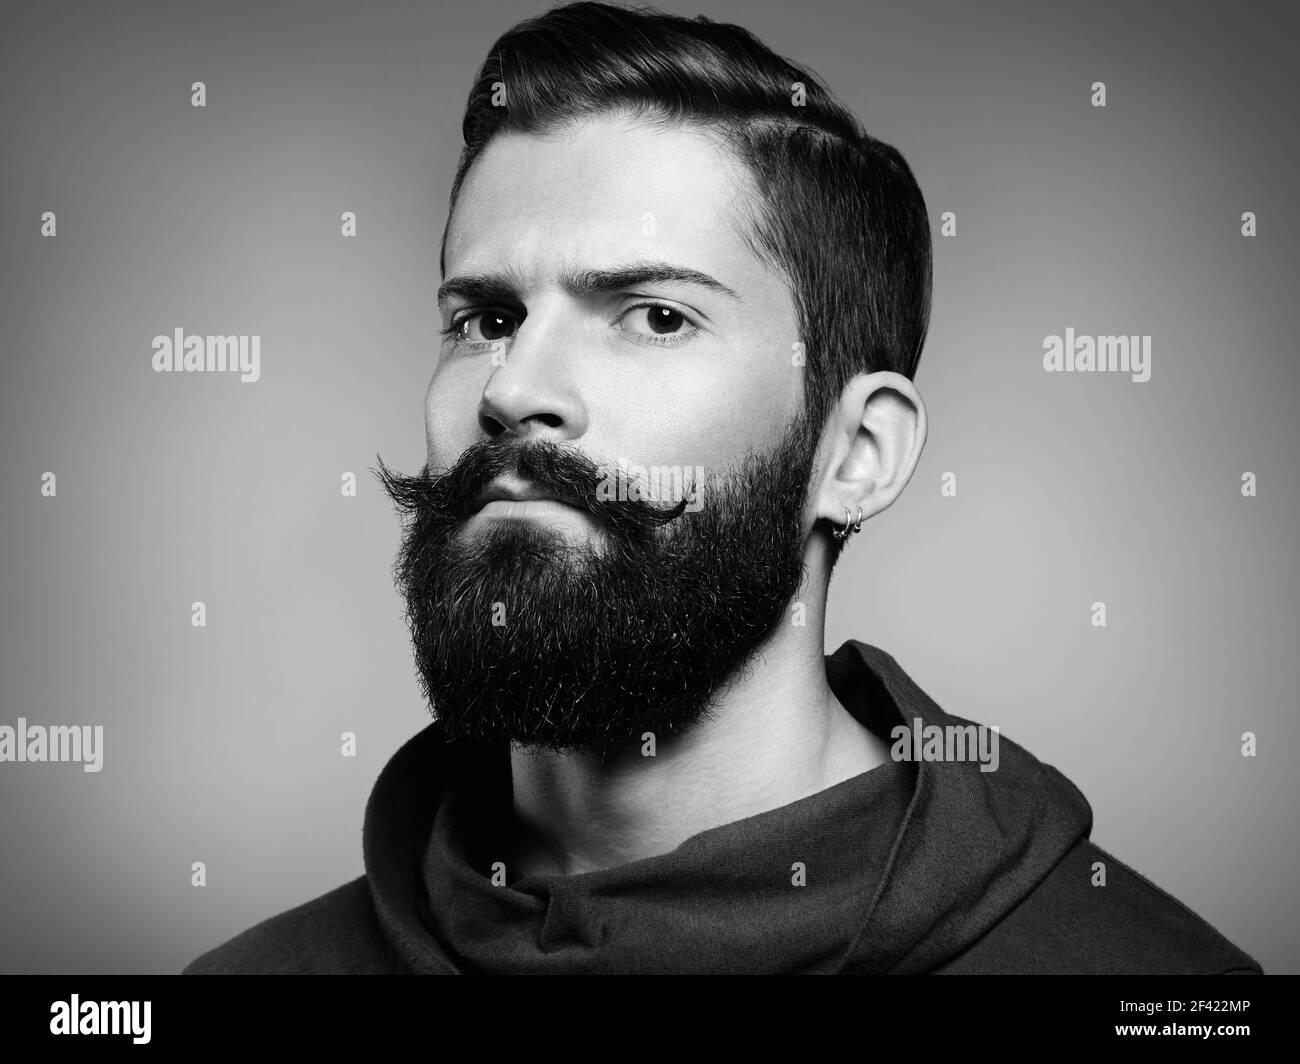 Portrait d'un homme de la main avec barbe et moustache. Image rapprochée d'un homme barbu brutal et sérieux sur fond sombre. Photographie noir et blanc Banque D'Images